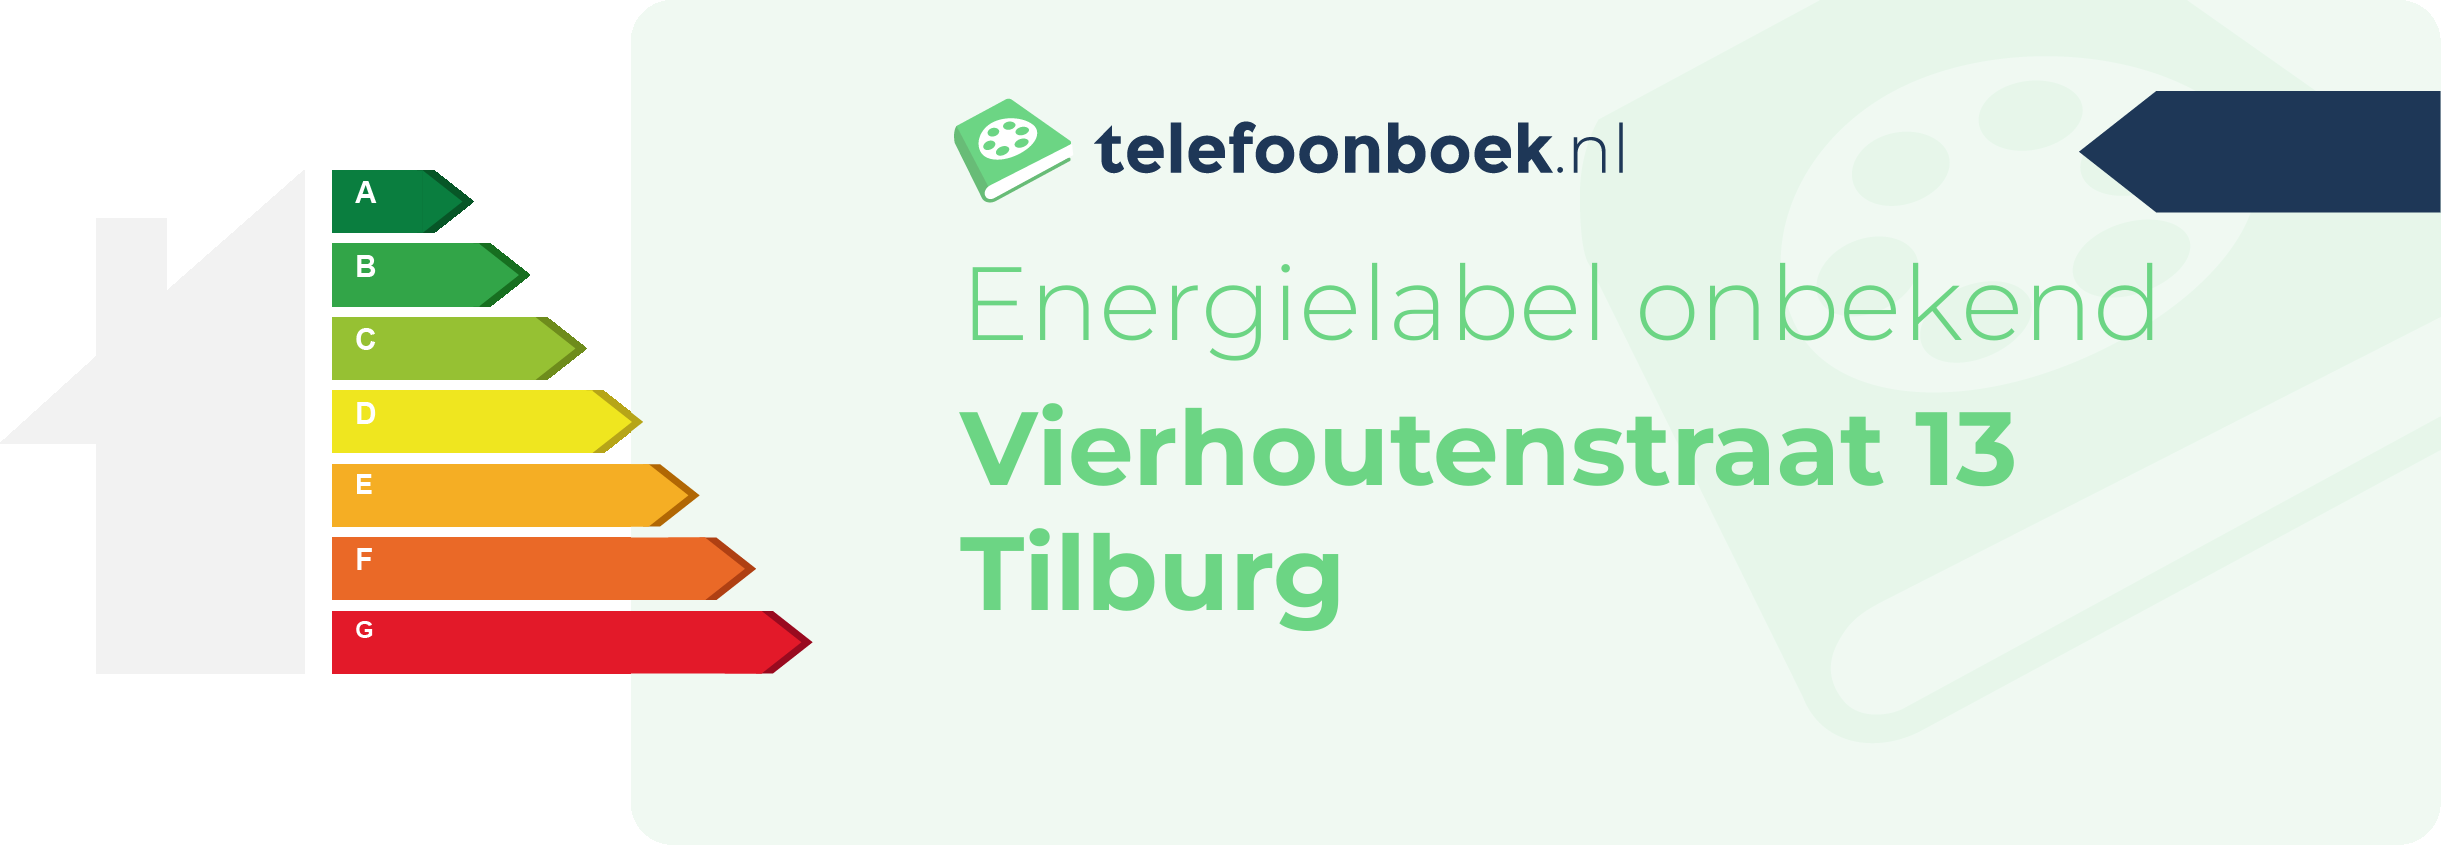 Energielabel Vierhoutenstraat 13 Tilburg